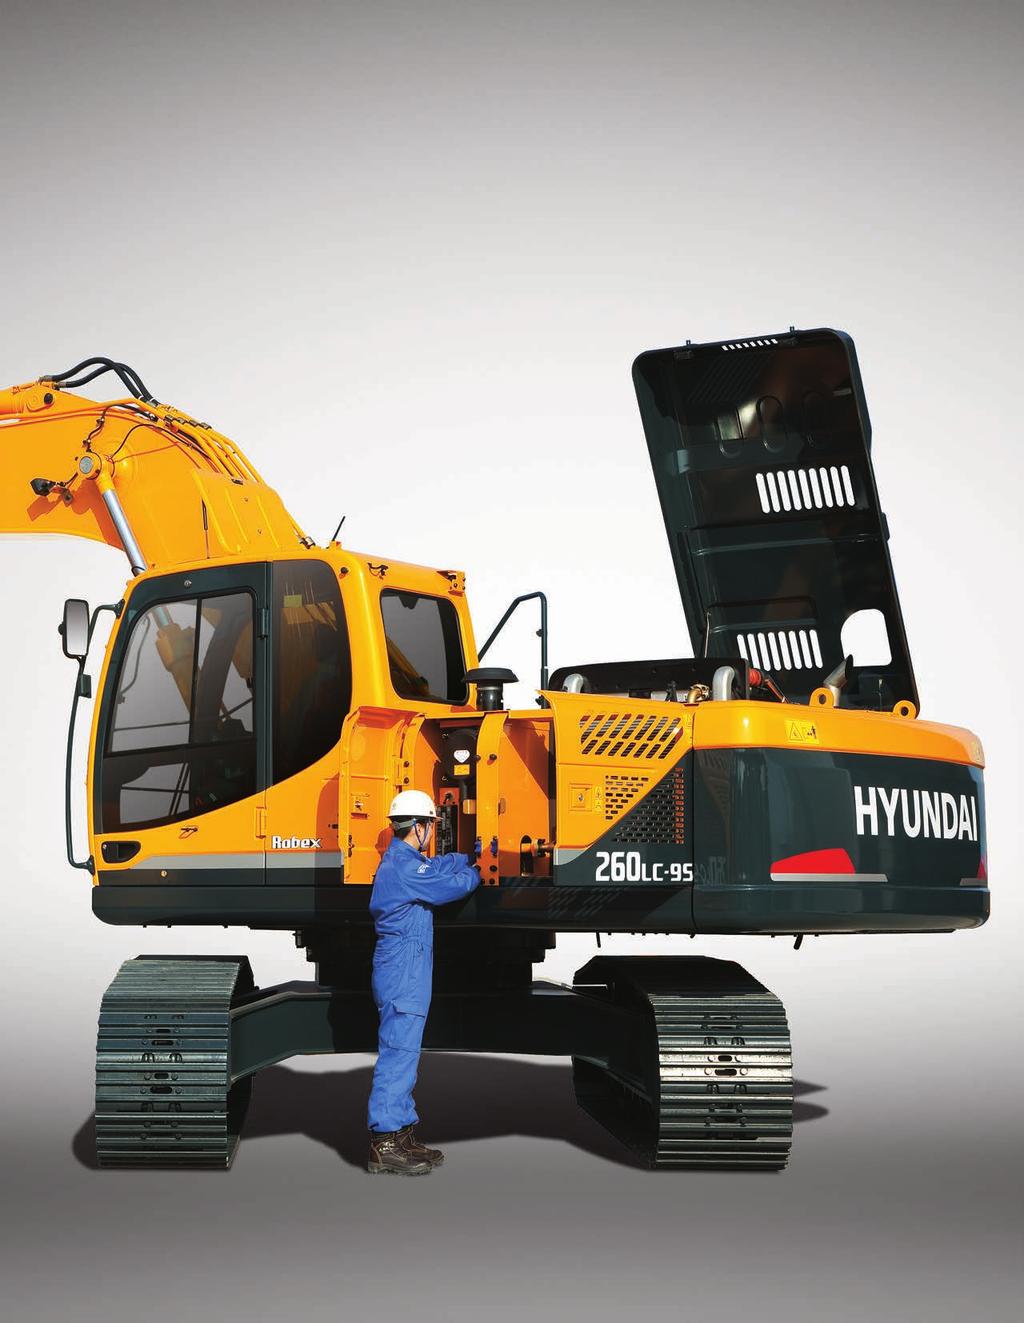 Rentabilidad Las excavadoras Serie 9S están diseñadas para maximizar la rentabilidad a través de eficiencias mejoradas, características